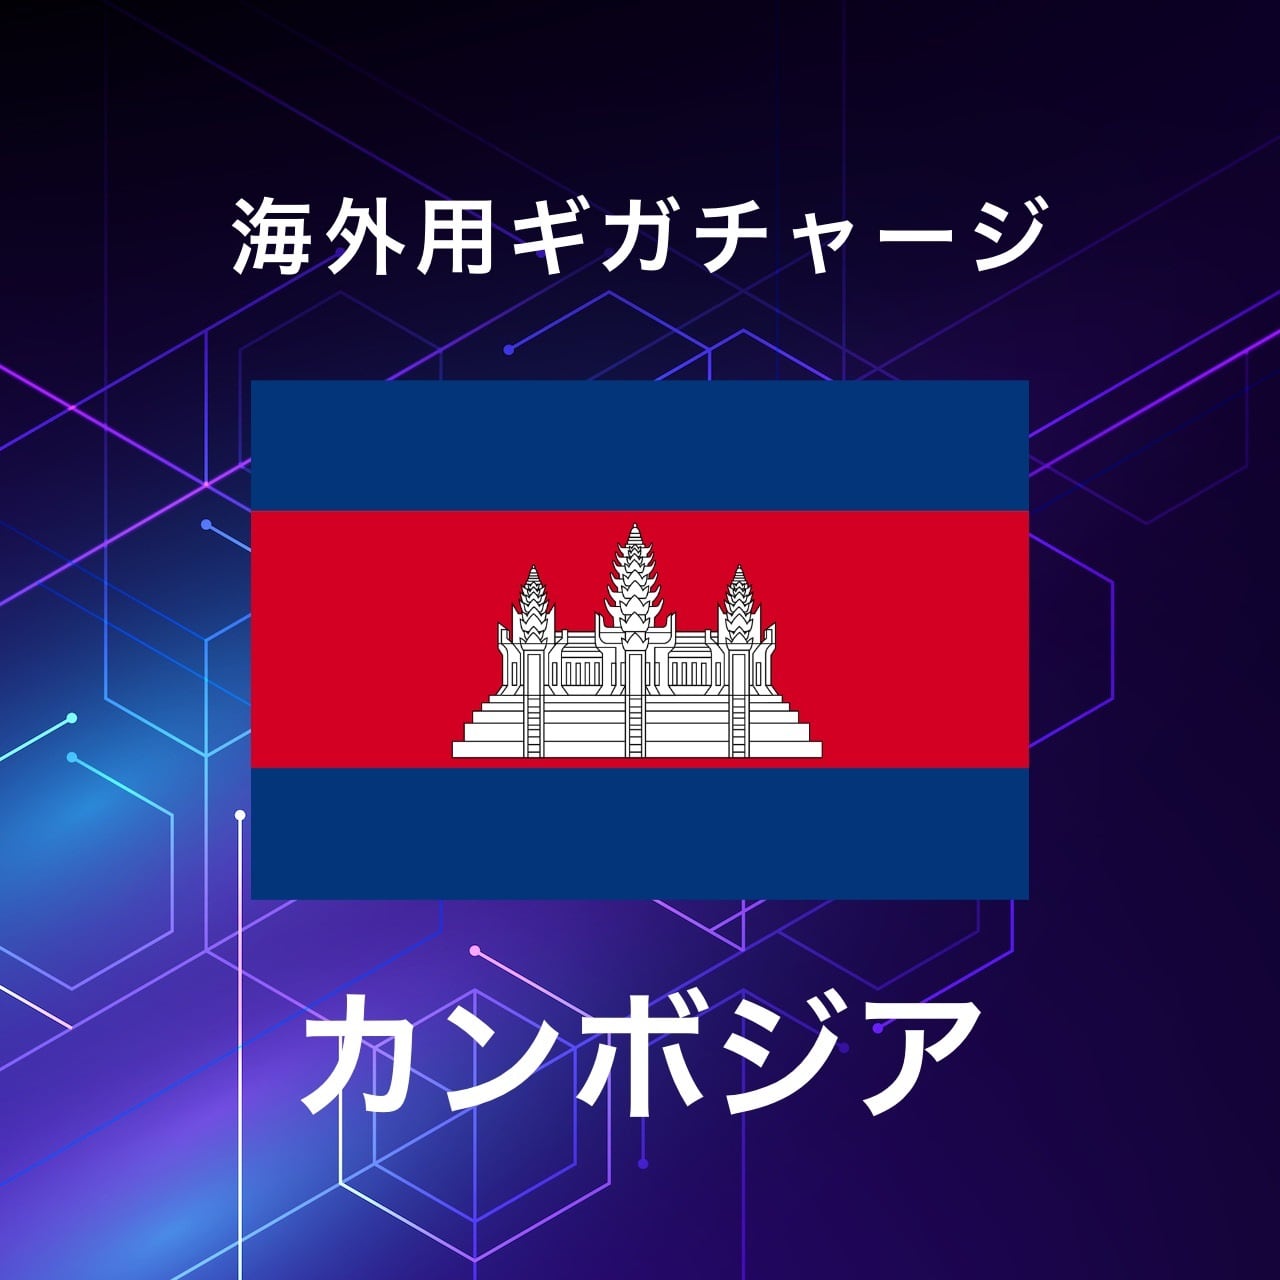 【カンボジア】海外GBチャージ | サムライチャージWiFi専用